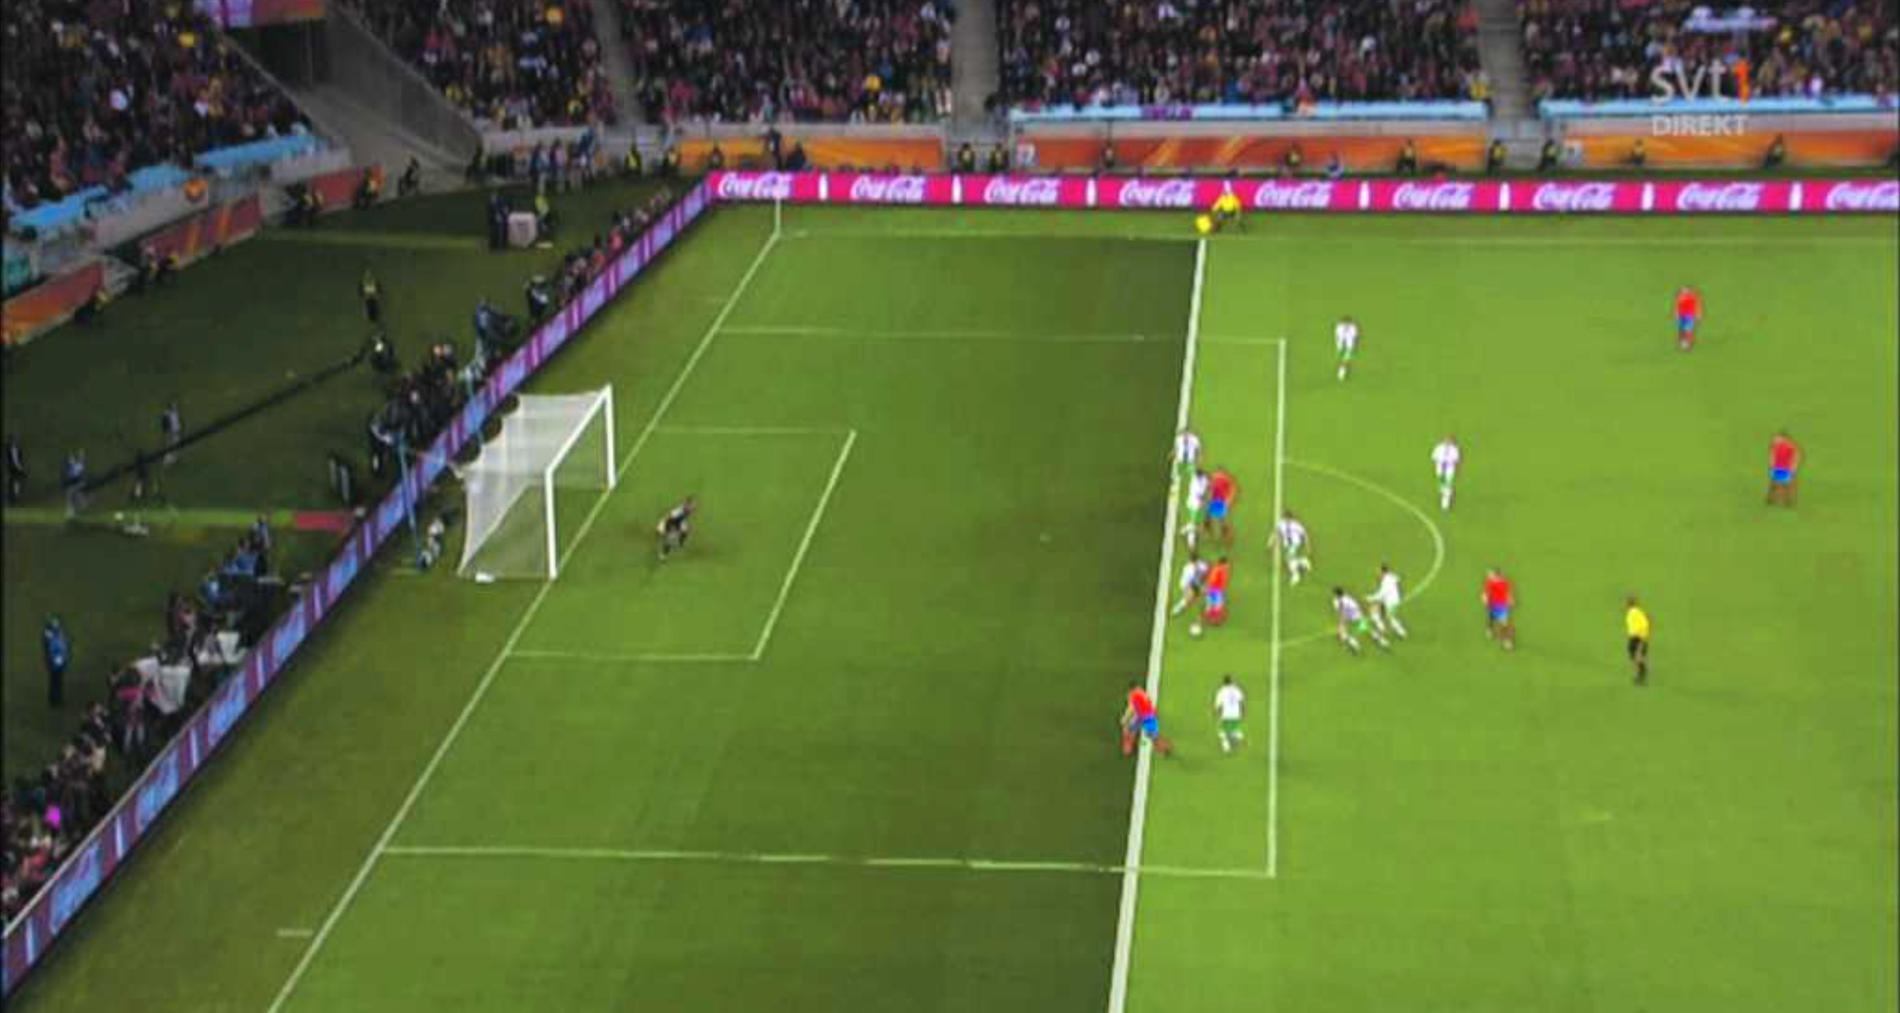 I VM 2010 avgjordes en match mellan Spanien och Portugal av ett mål som med dagens teknik hade dömts bort. På bilden ser man att David Villa, längst ner i bild, är framför den portugisiska spelaren som är längst bak i planen när passningen slås.  